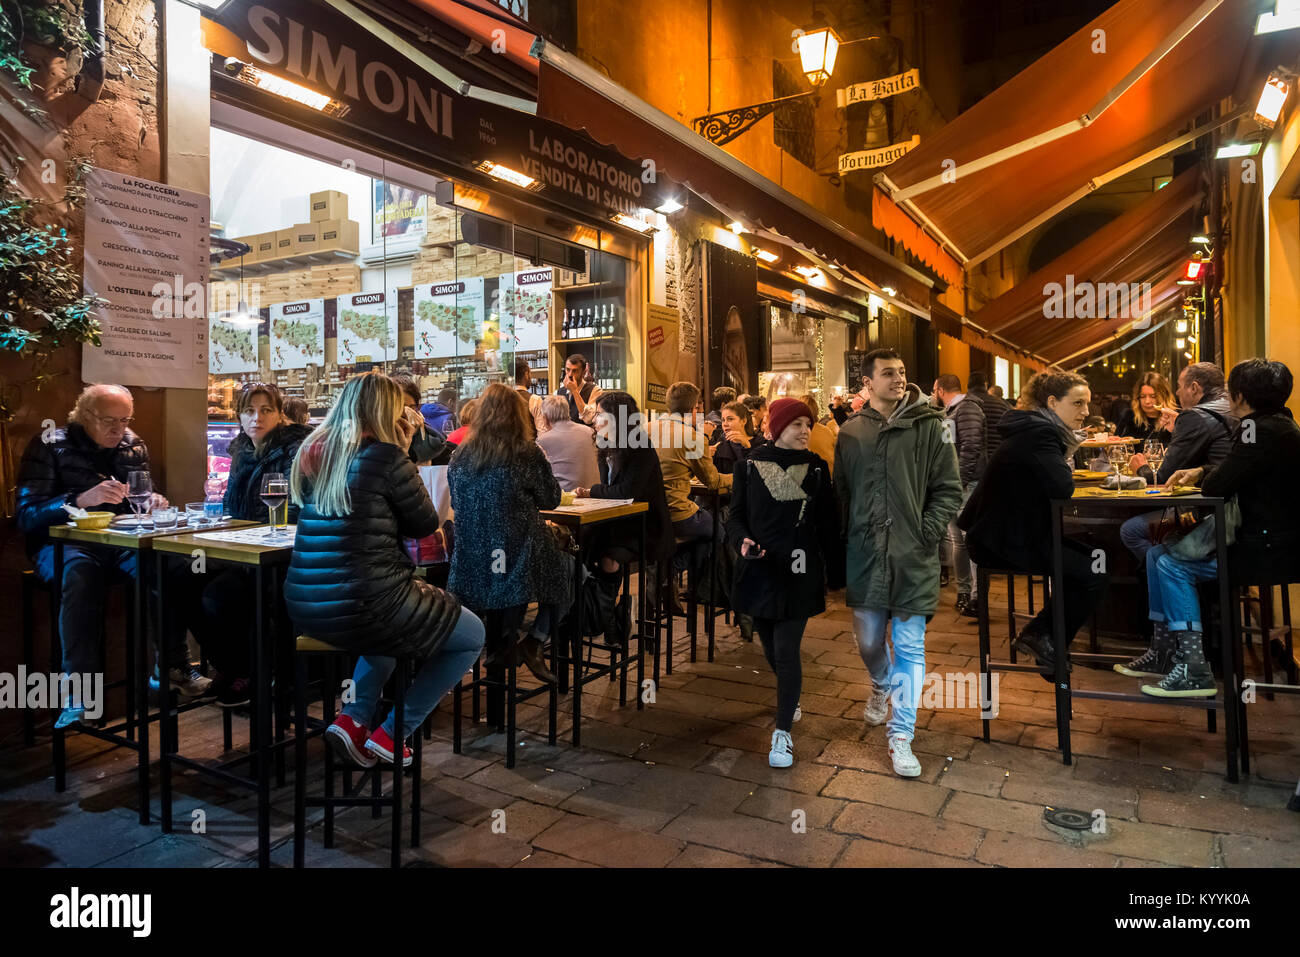 Bologne, Italie - les gens pour la soirée à manger et à boire dans les cafés et restaurants en Via Pescherie Vecchie, ville de Bologne Banque D'Images